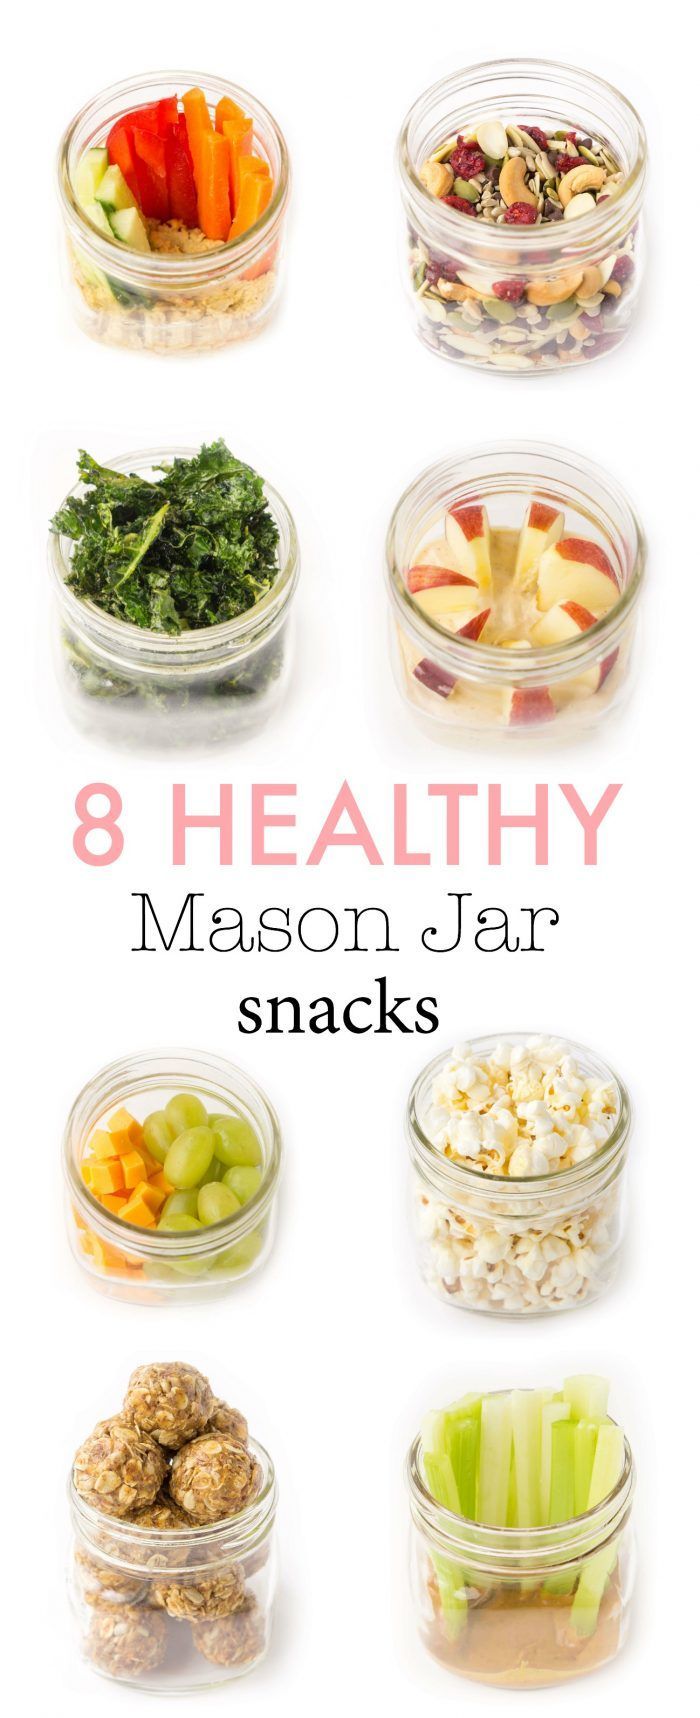 13 healthy recipes Snacks mason jars ideas